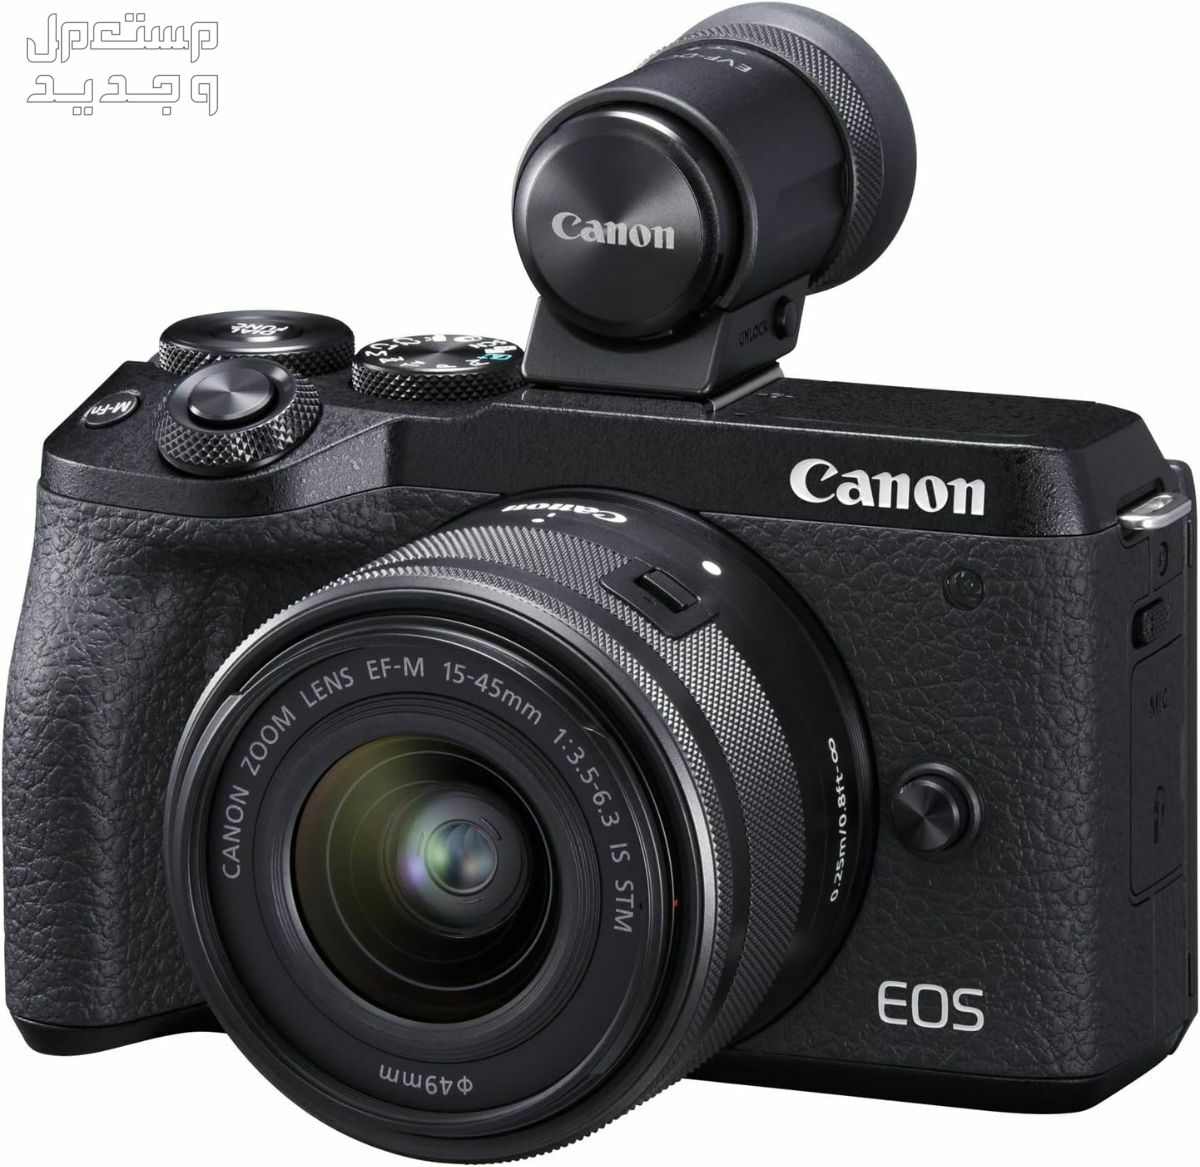 سعر ومميزات ومواصفات أرخص 5 كاميرات تصوير من كانون في قطر كاميرا Canon EOS M6 Mark II